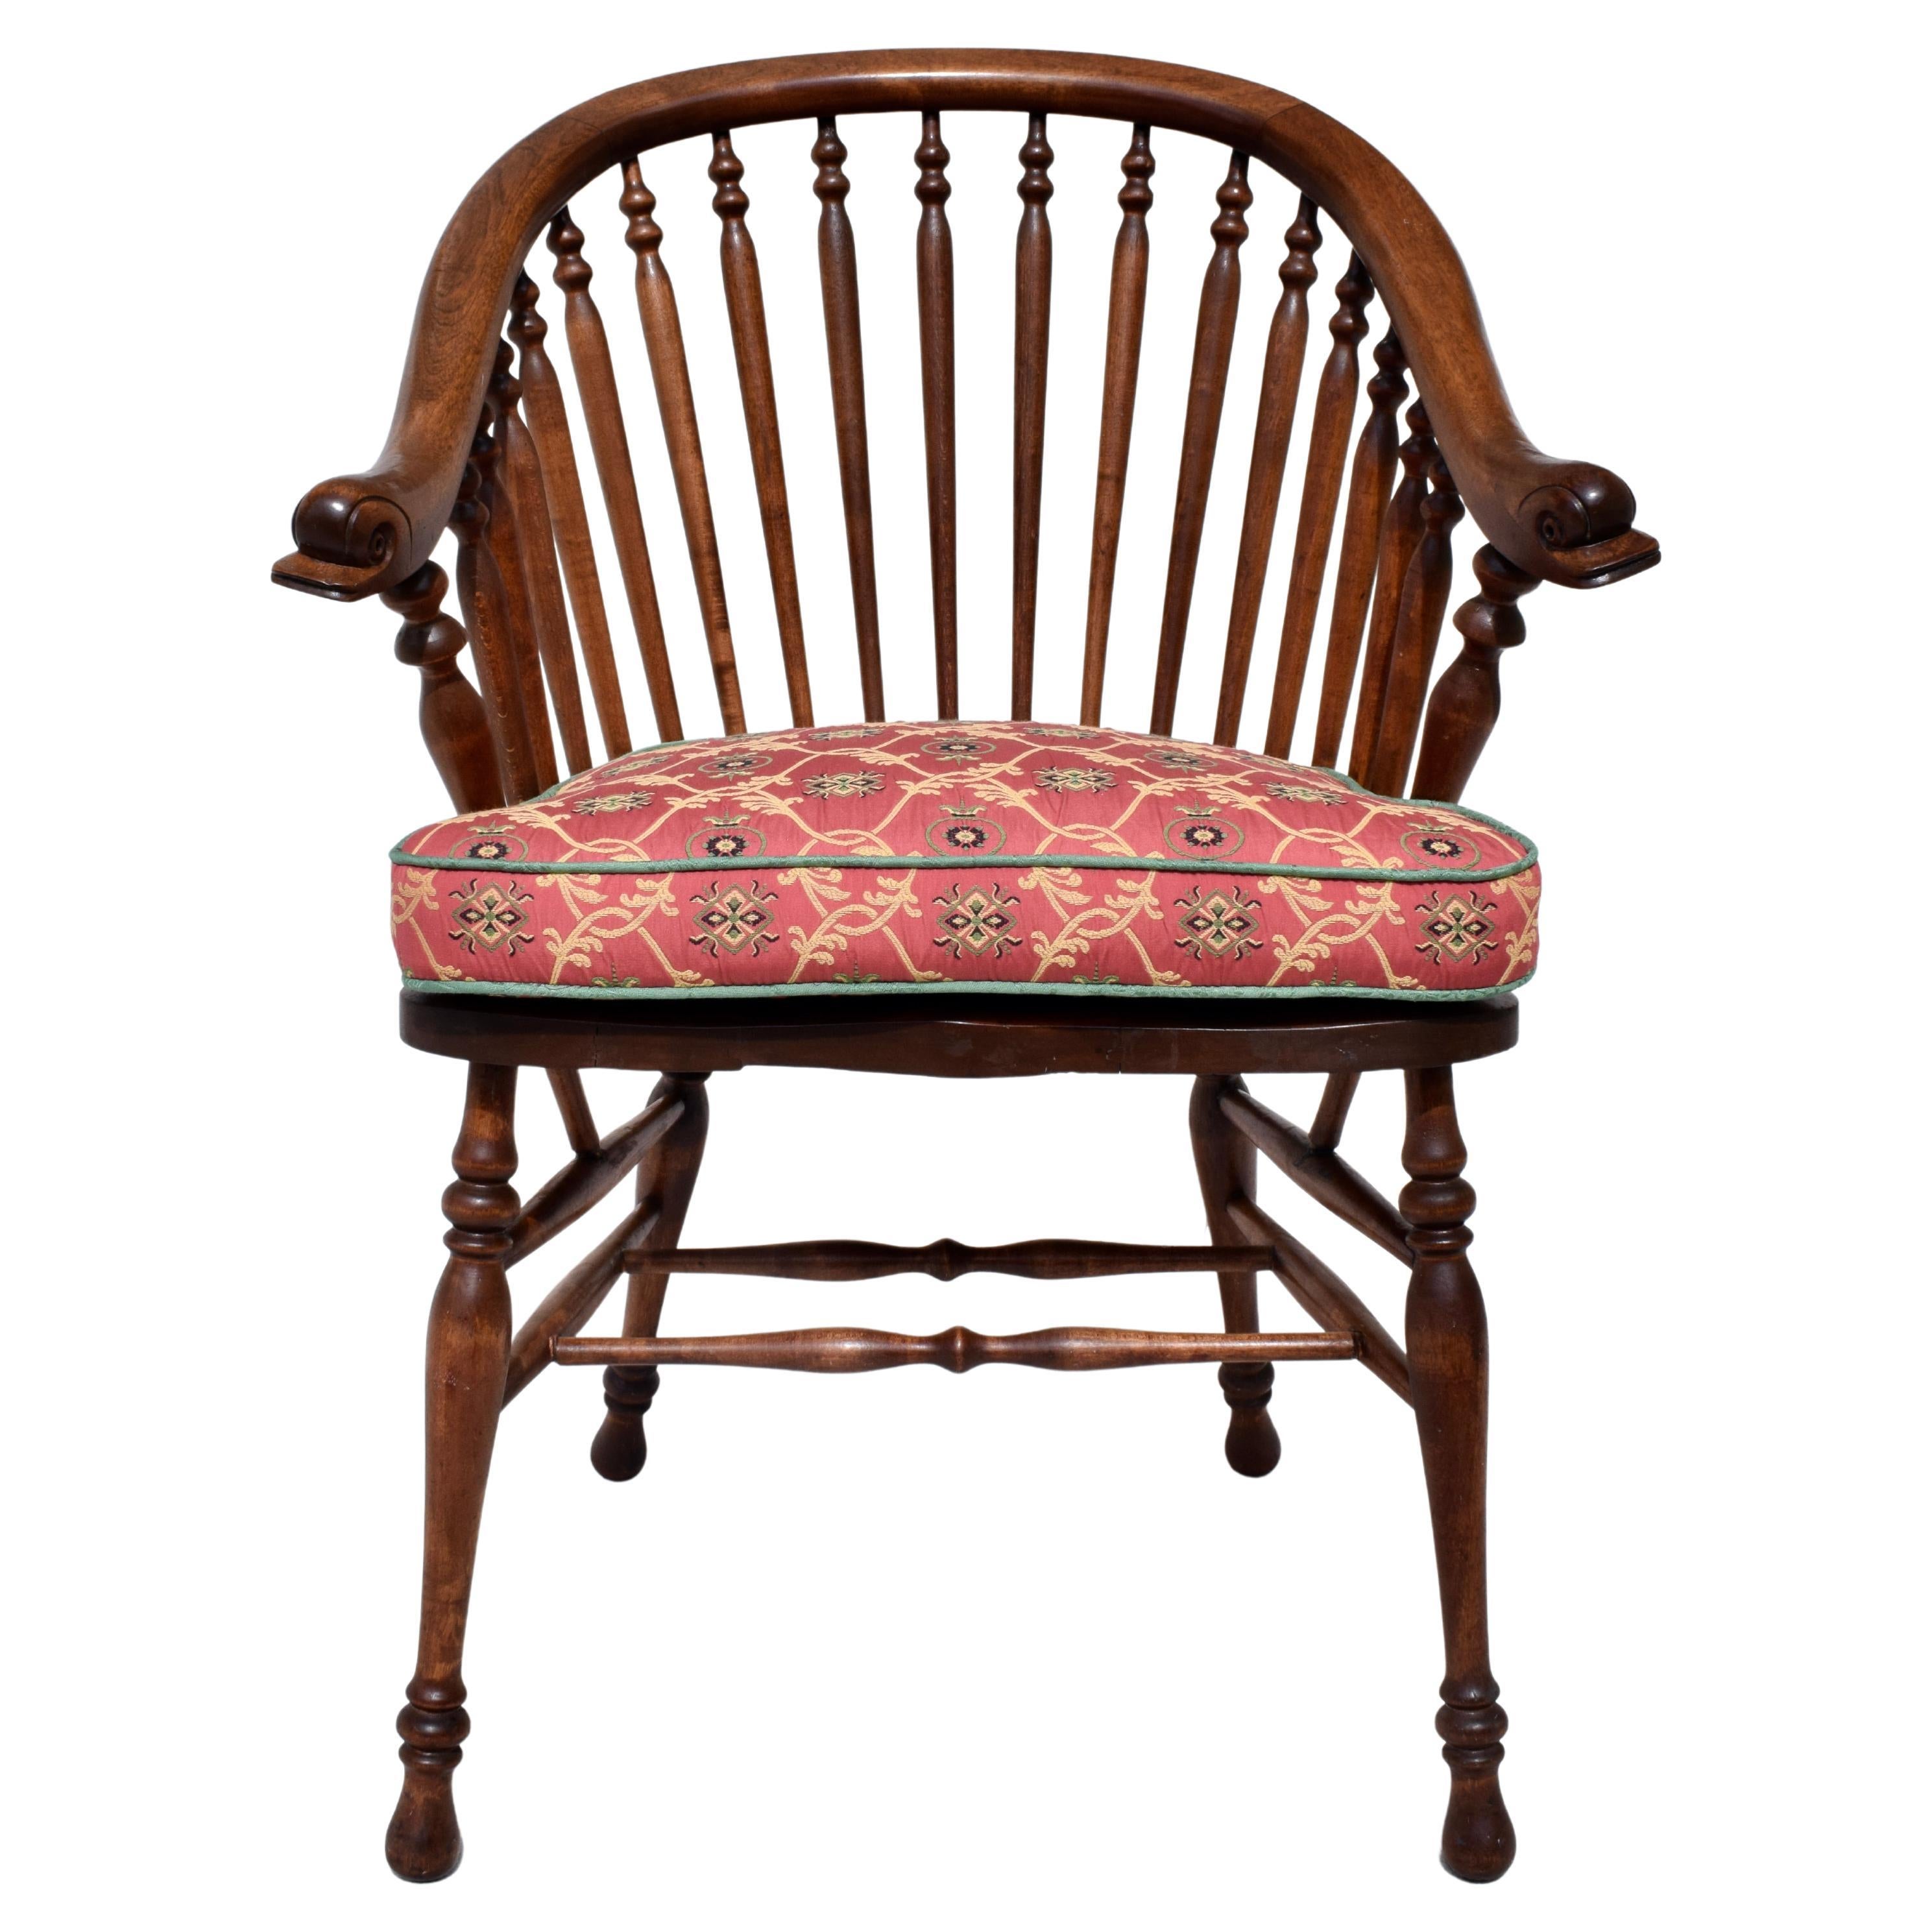 Stuhl im Windsor-Stil des 19. Jahrhunderts mit Delfinkopf-Armen